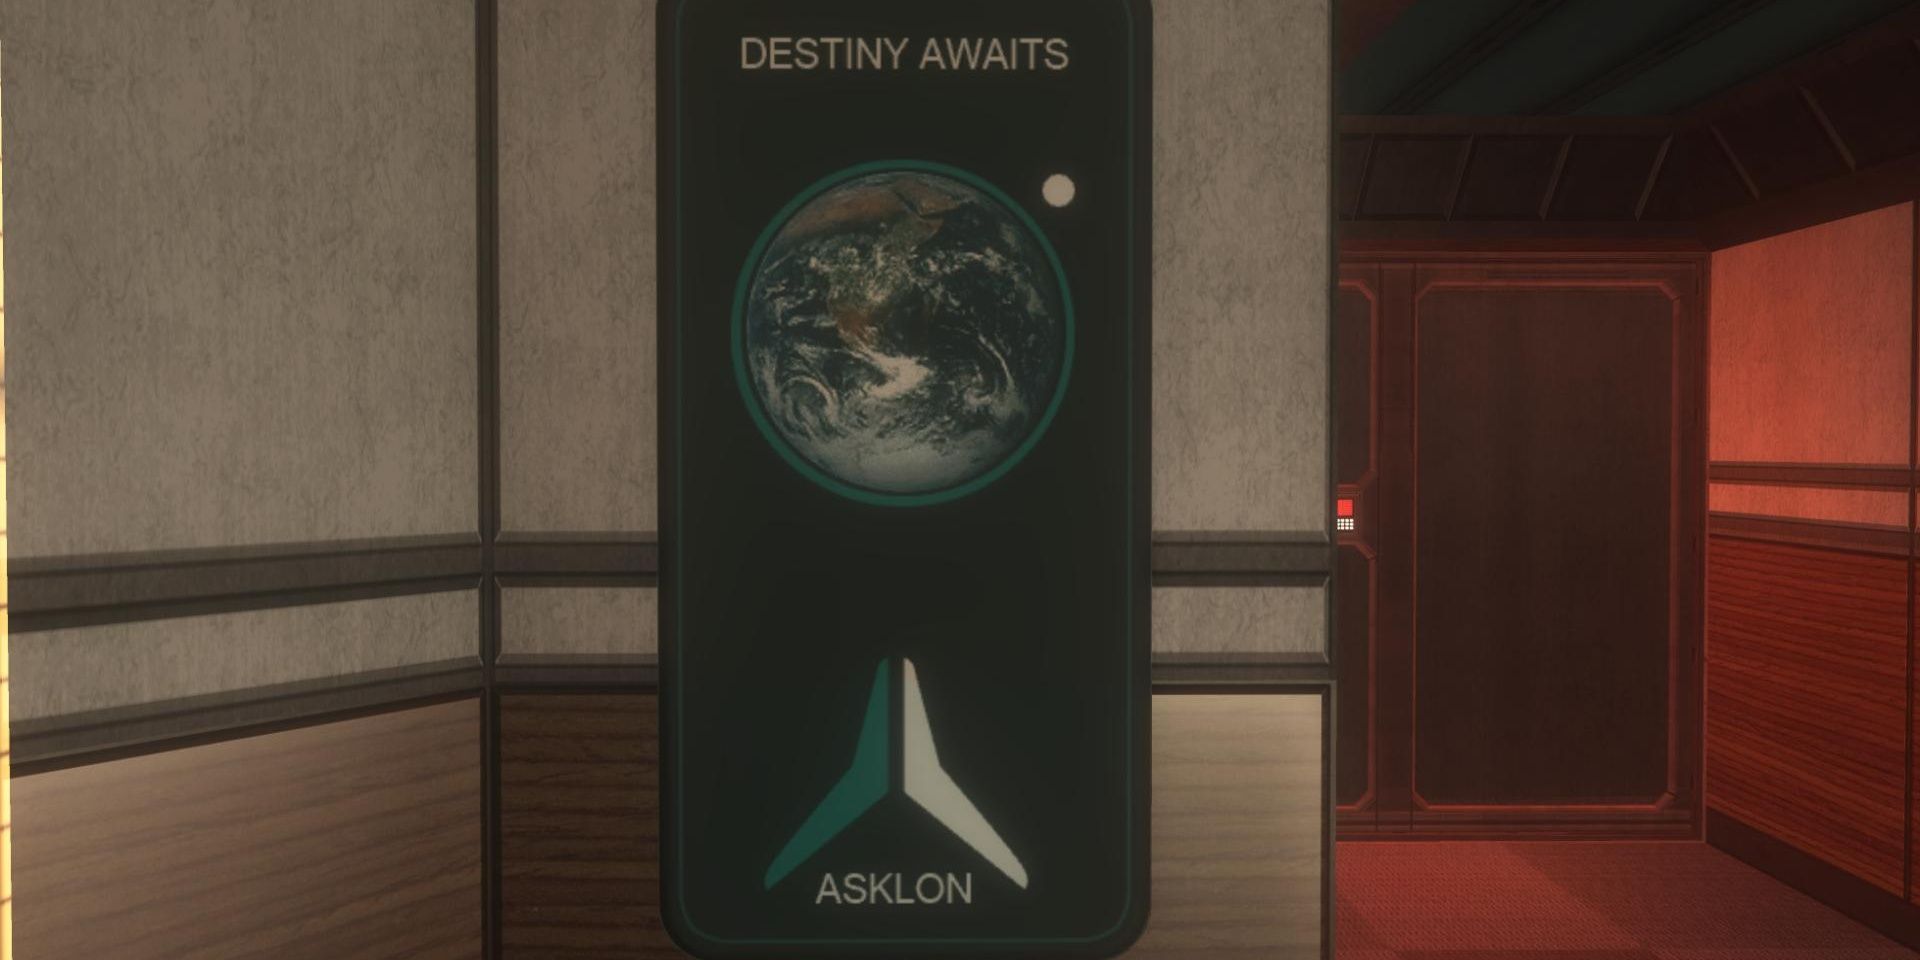 Destiny Easter Egg in Halo 3 ODST